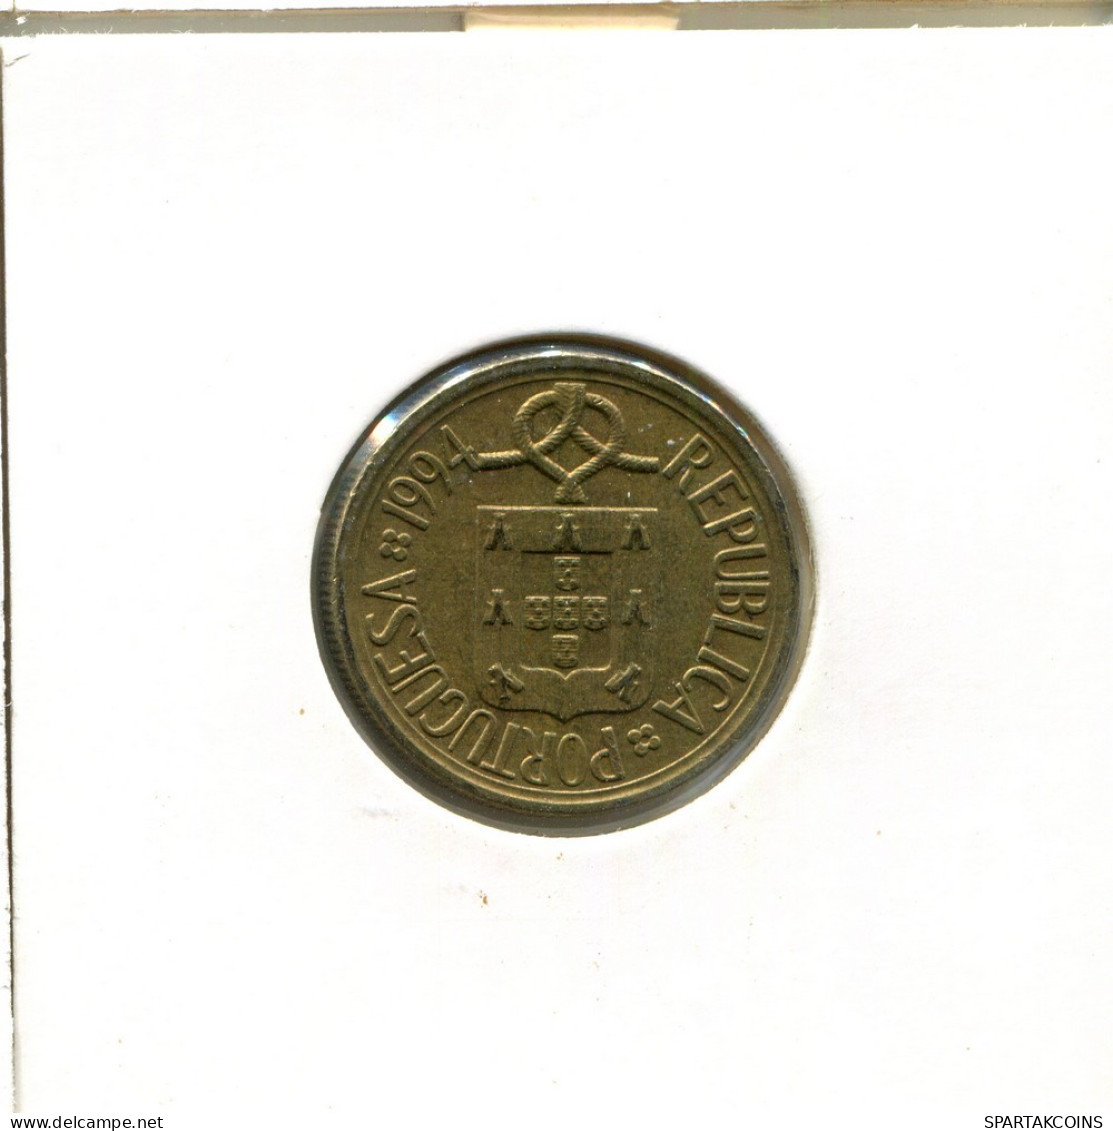 5 ESCUDOS 1994 PORTUGAL Moneda #AT393.E.A - Portogallo